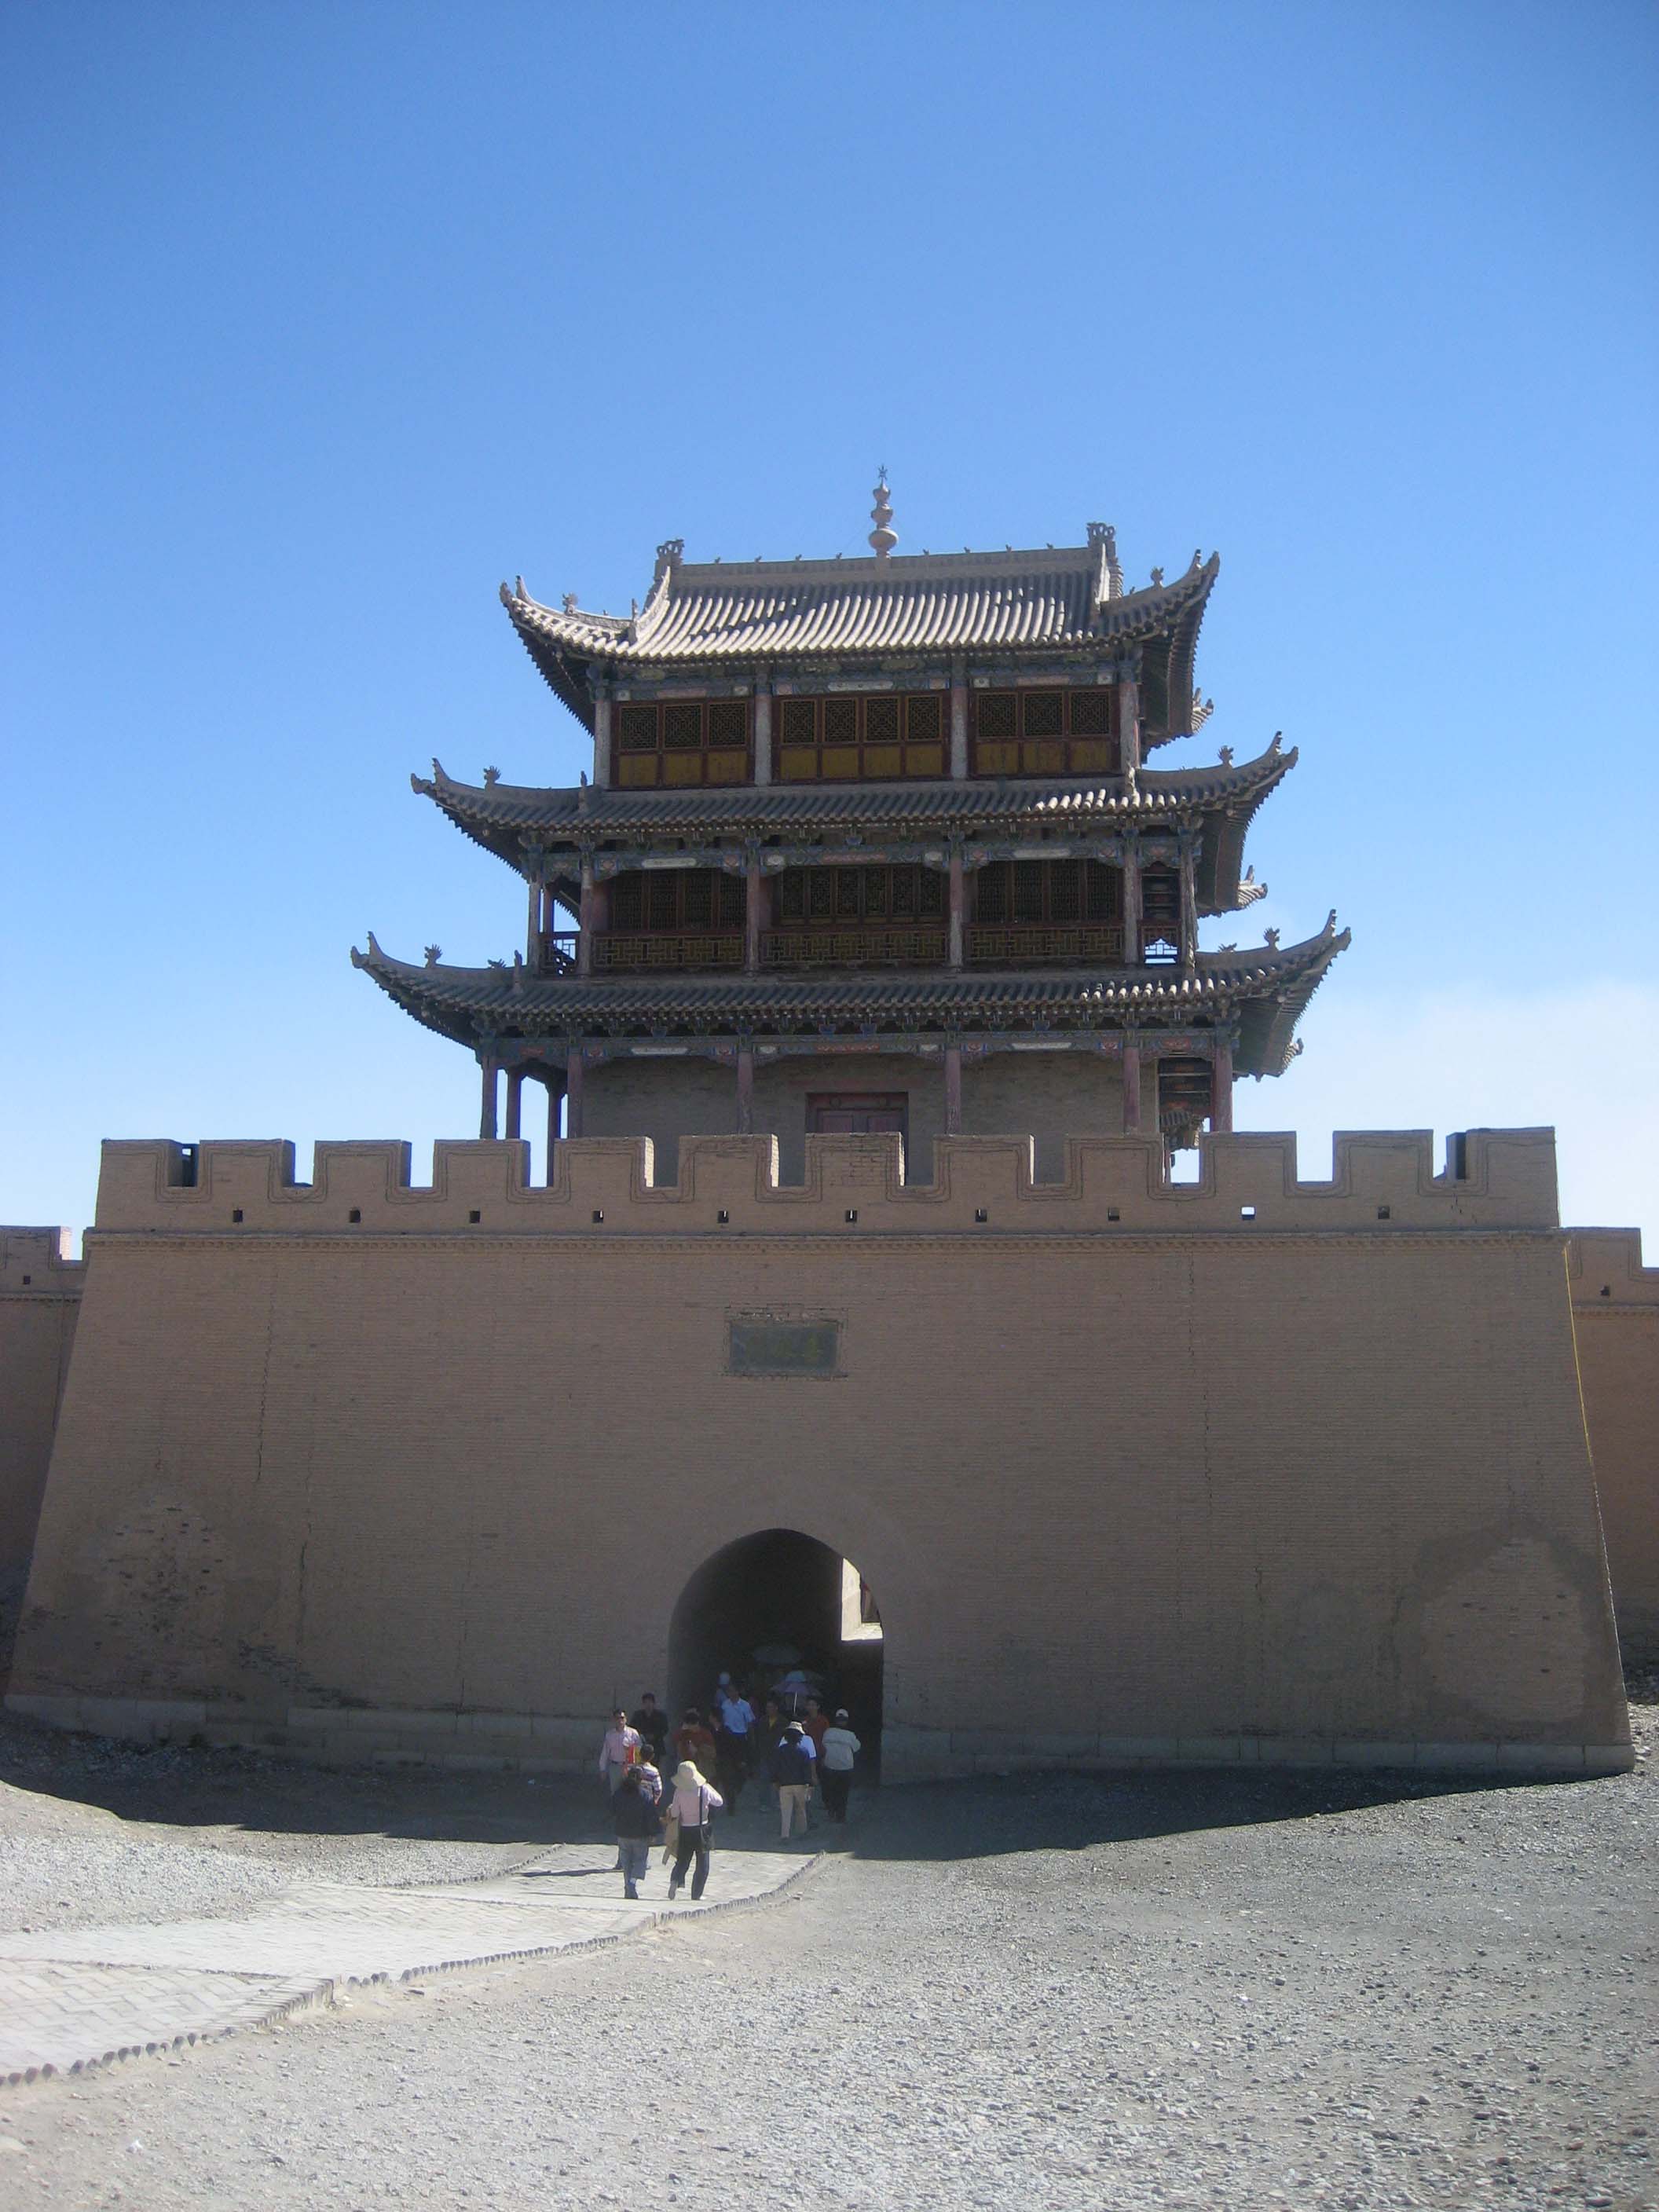 Jiayuguan Wall Fortress - Great Wall of China